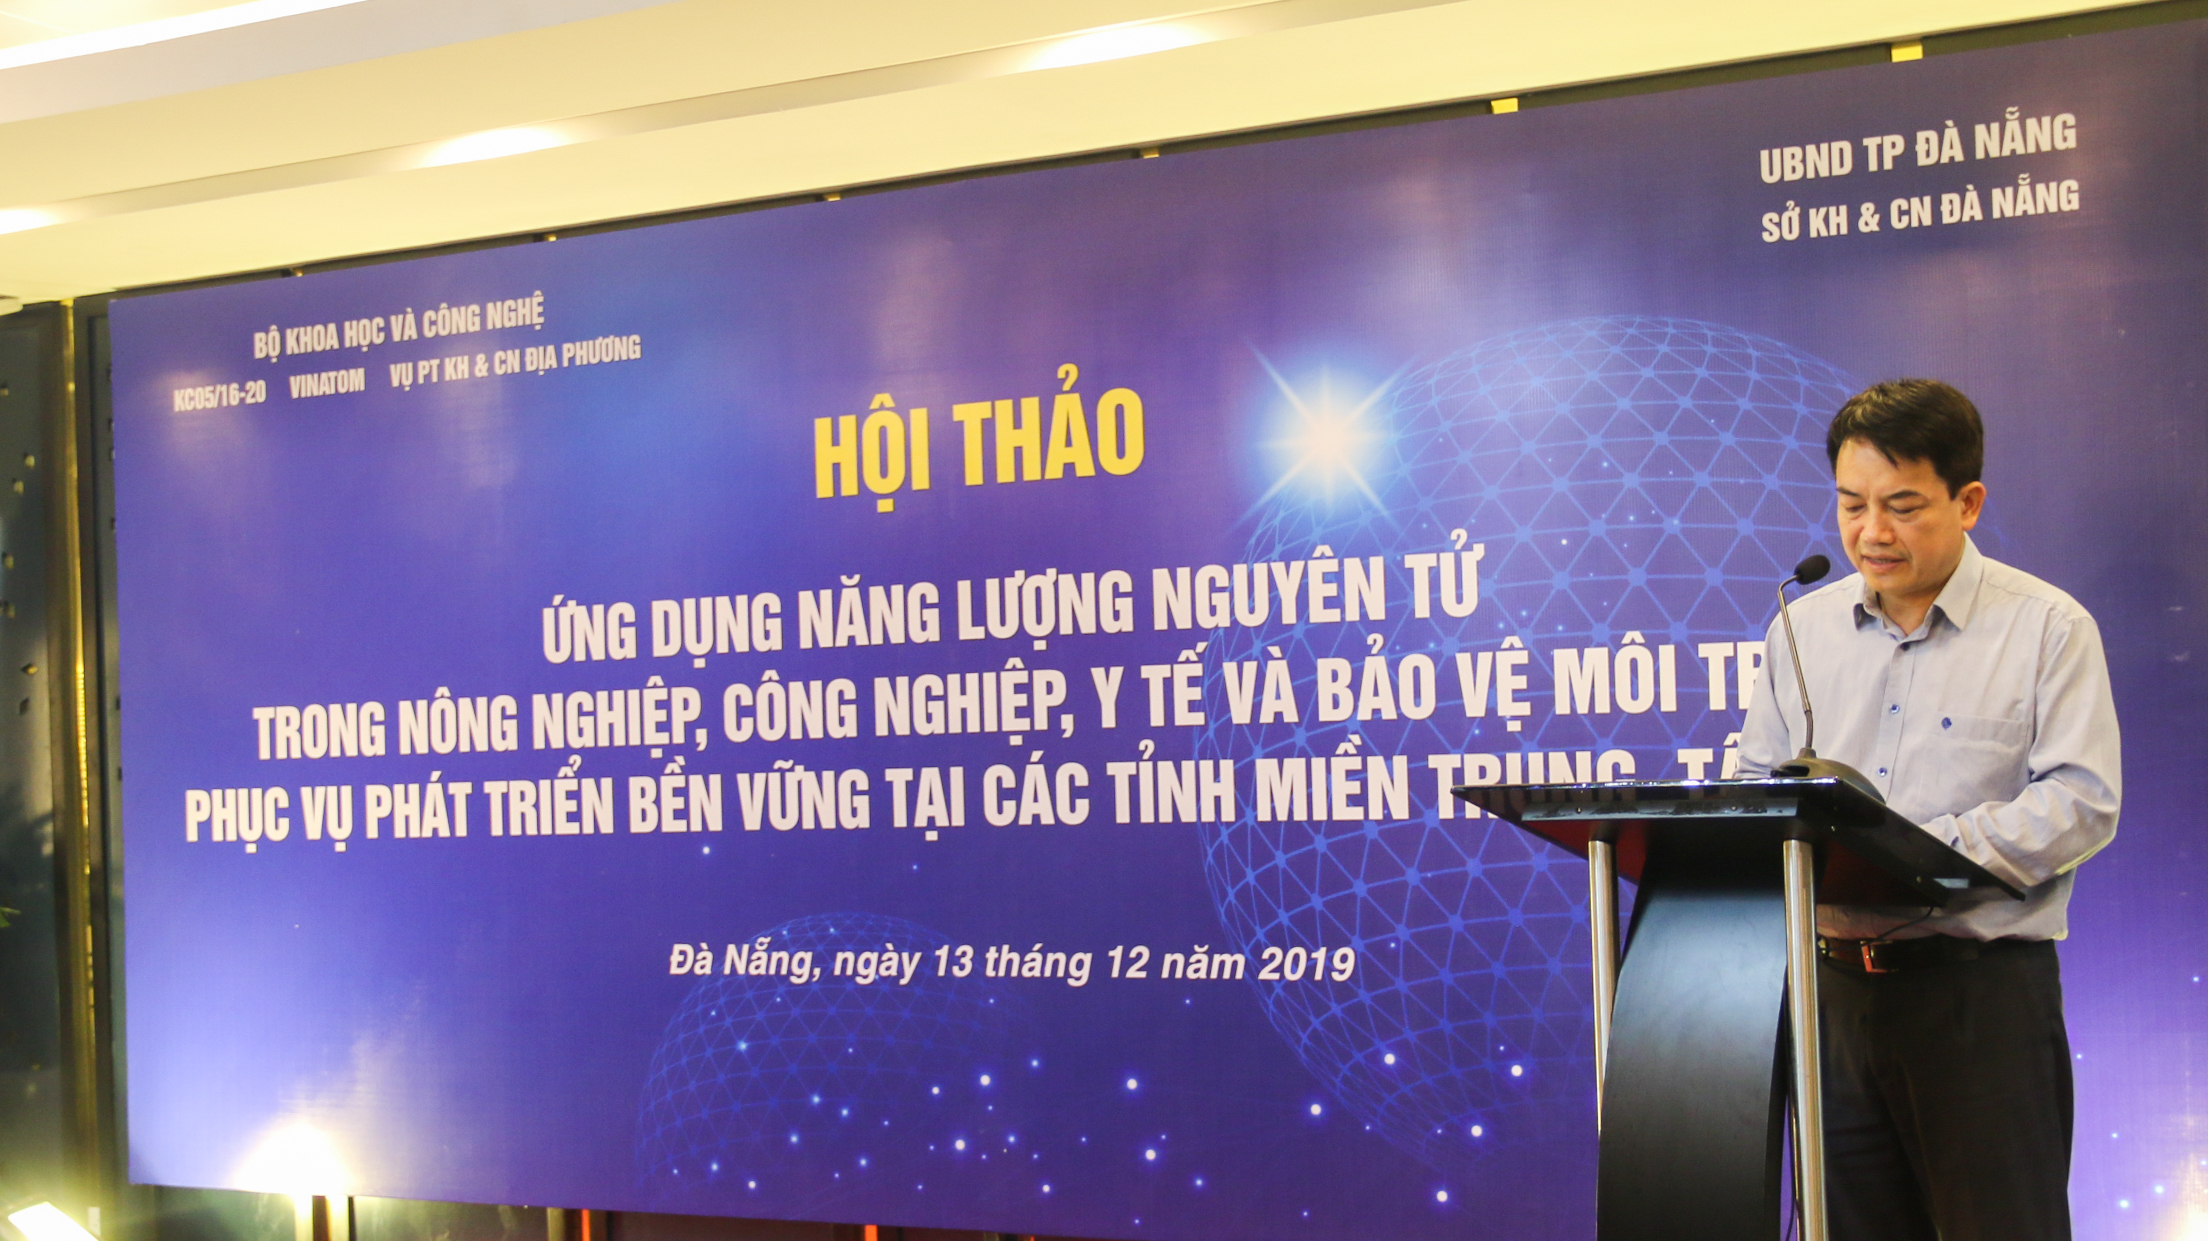 TS. Trần Chí Thành – Viện trưởng Viện Năng lượng nguyên tử Việt Nam phát biểu khai mạc hội thảo